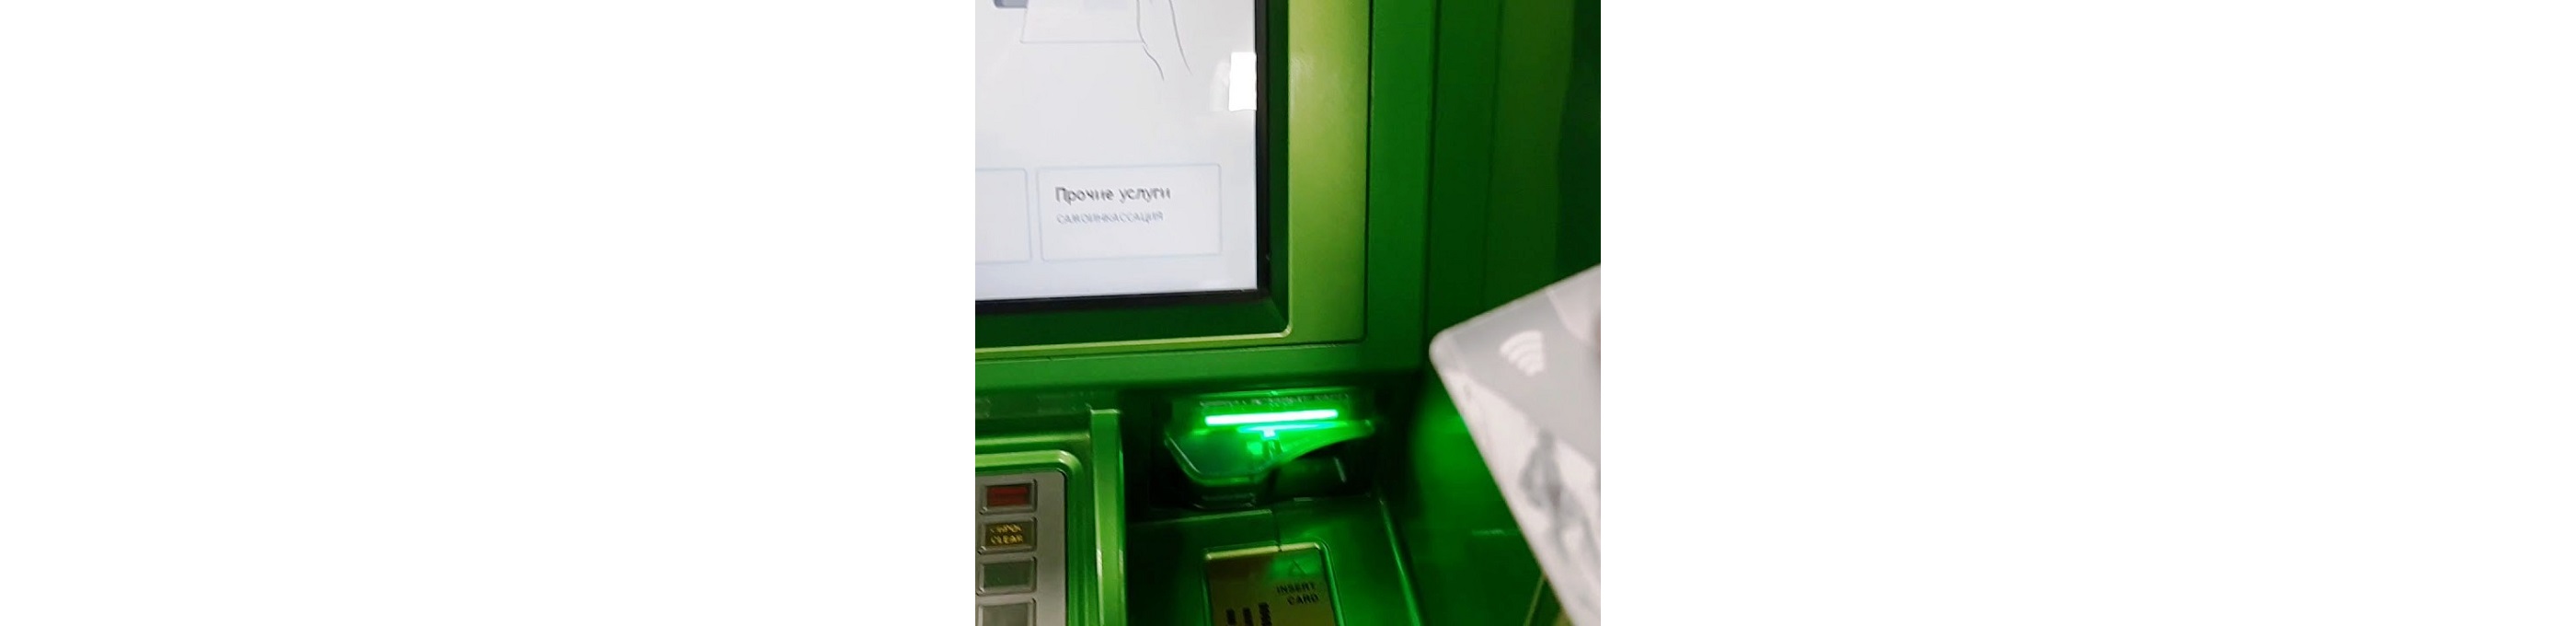 Бесконтактные банкоматы уже сегодня можно встретить в российских банках. Попробуем разобраться что стоит за этим новшеством, удобство или рай для мошенников?